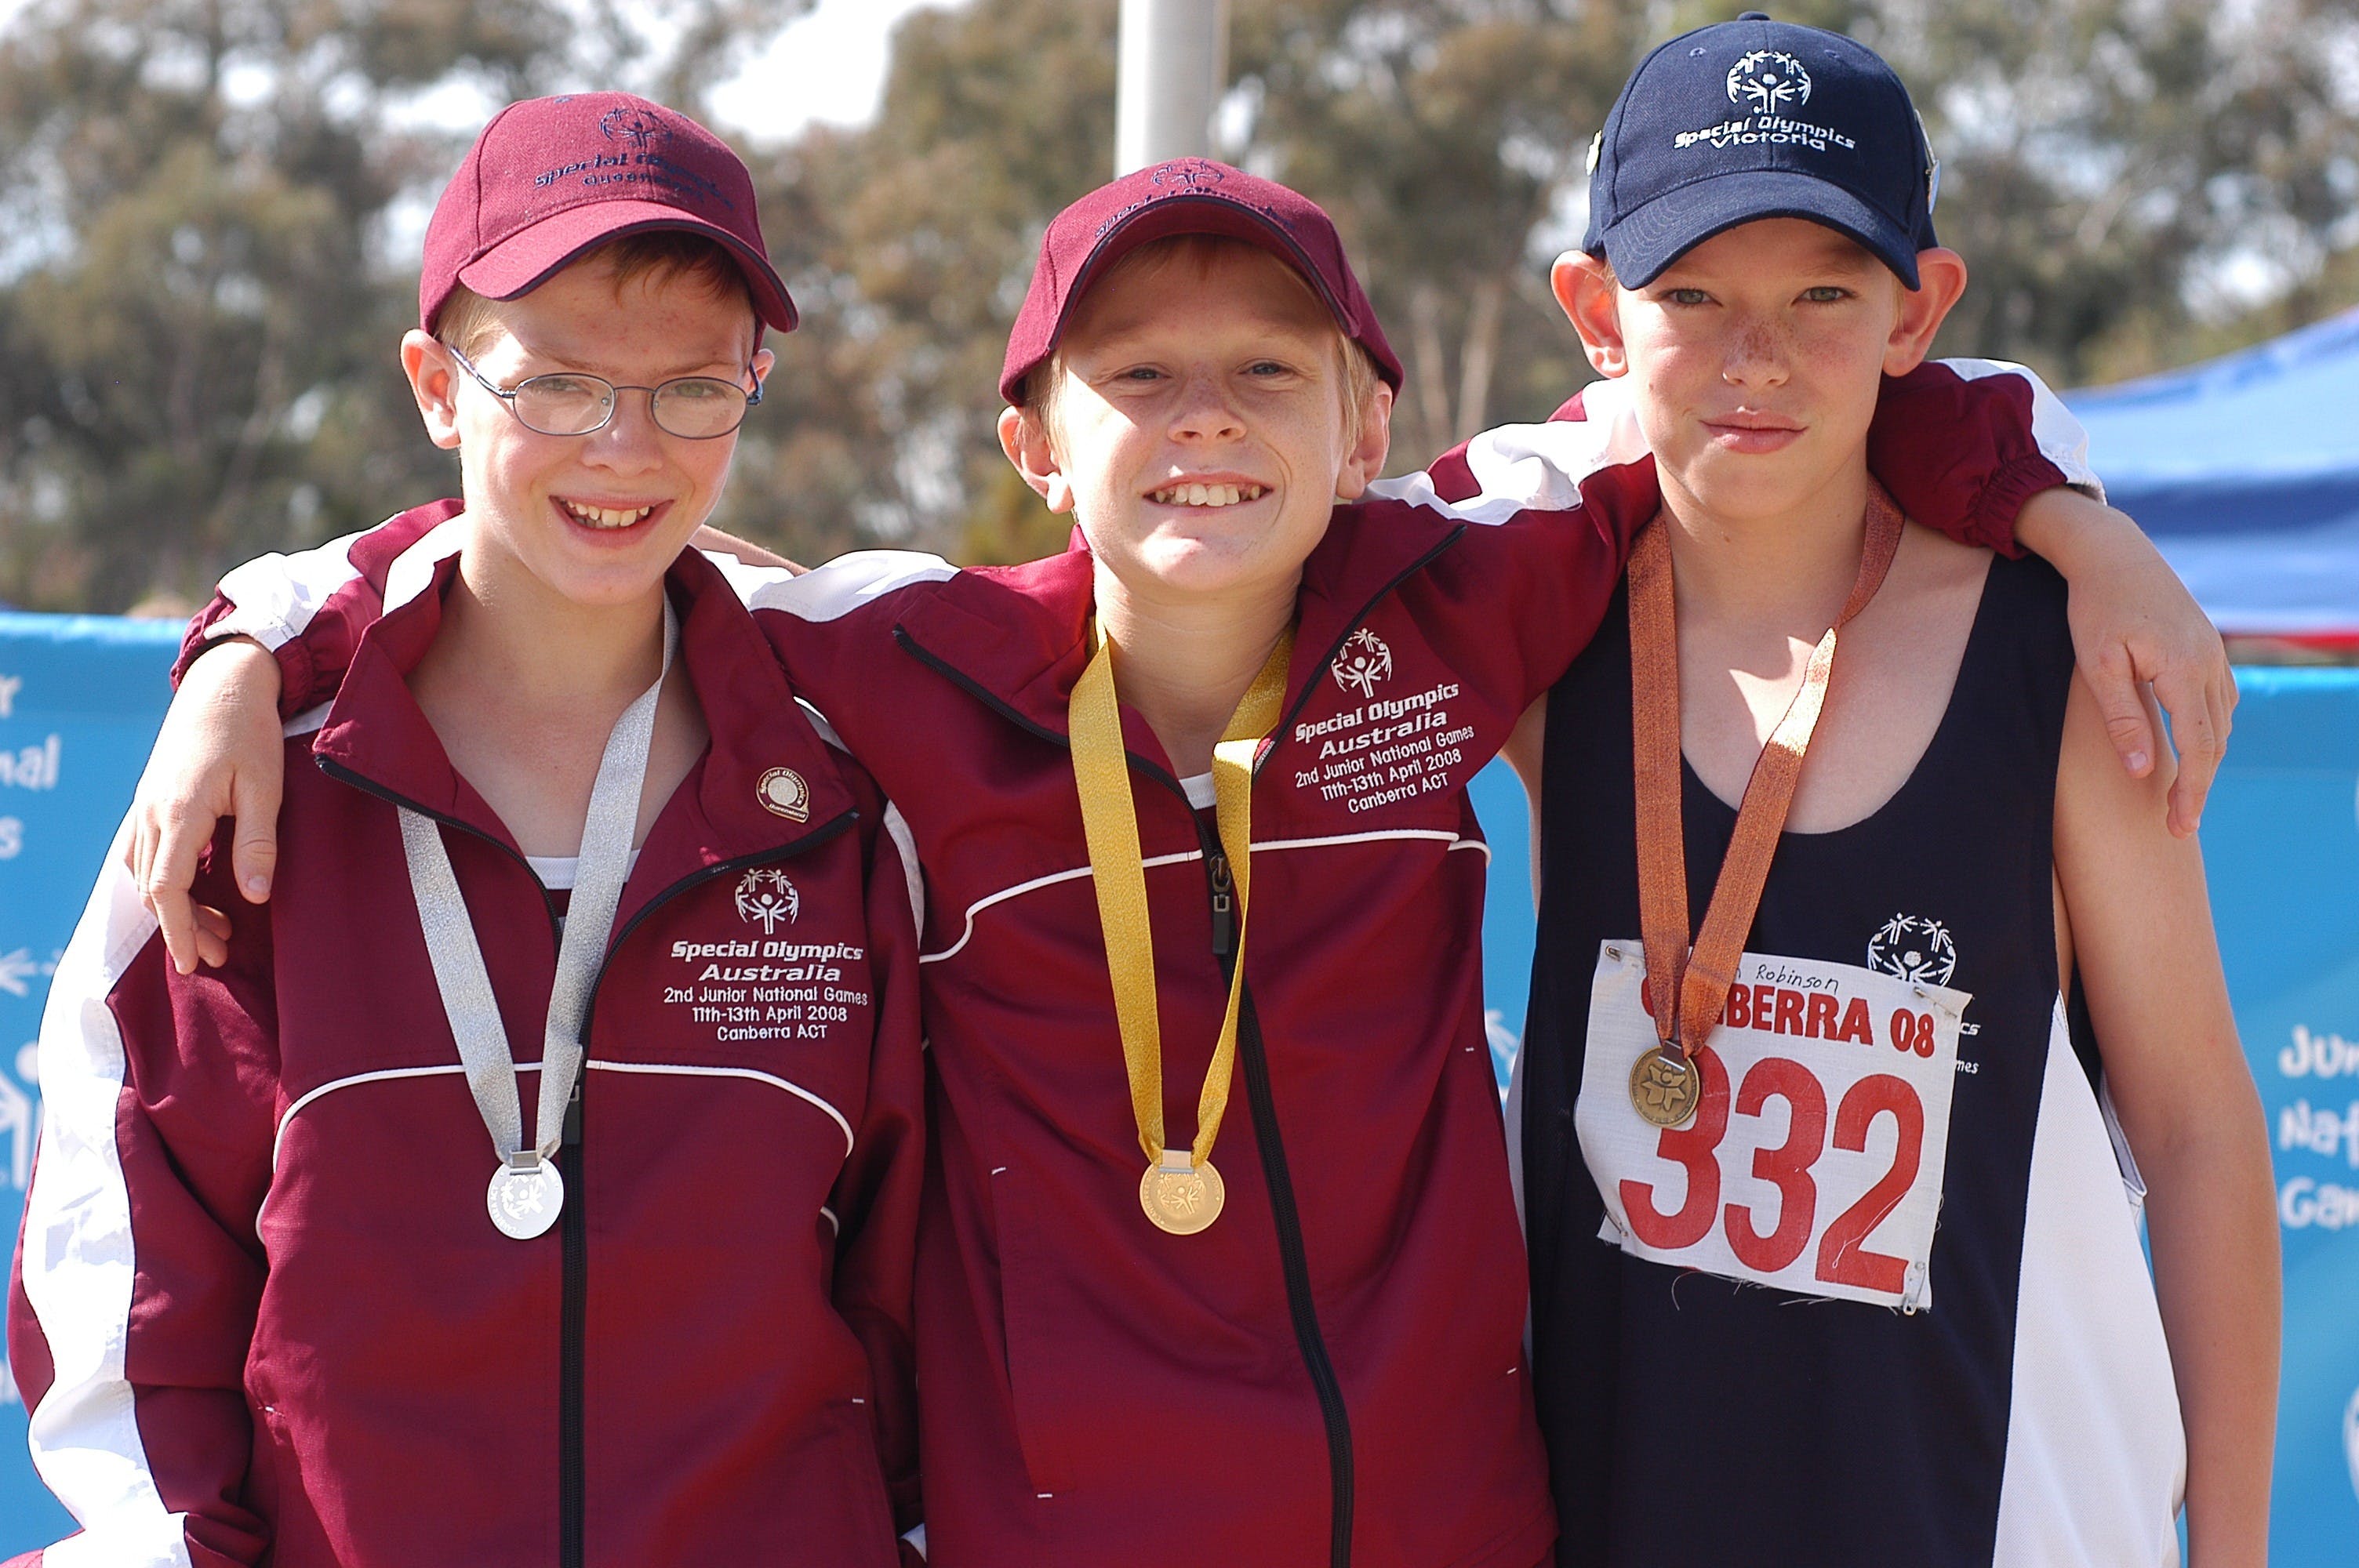 Special Olympics Australia Junior National Games 2021 - Melbourne Tourism